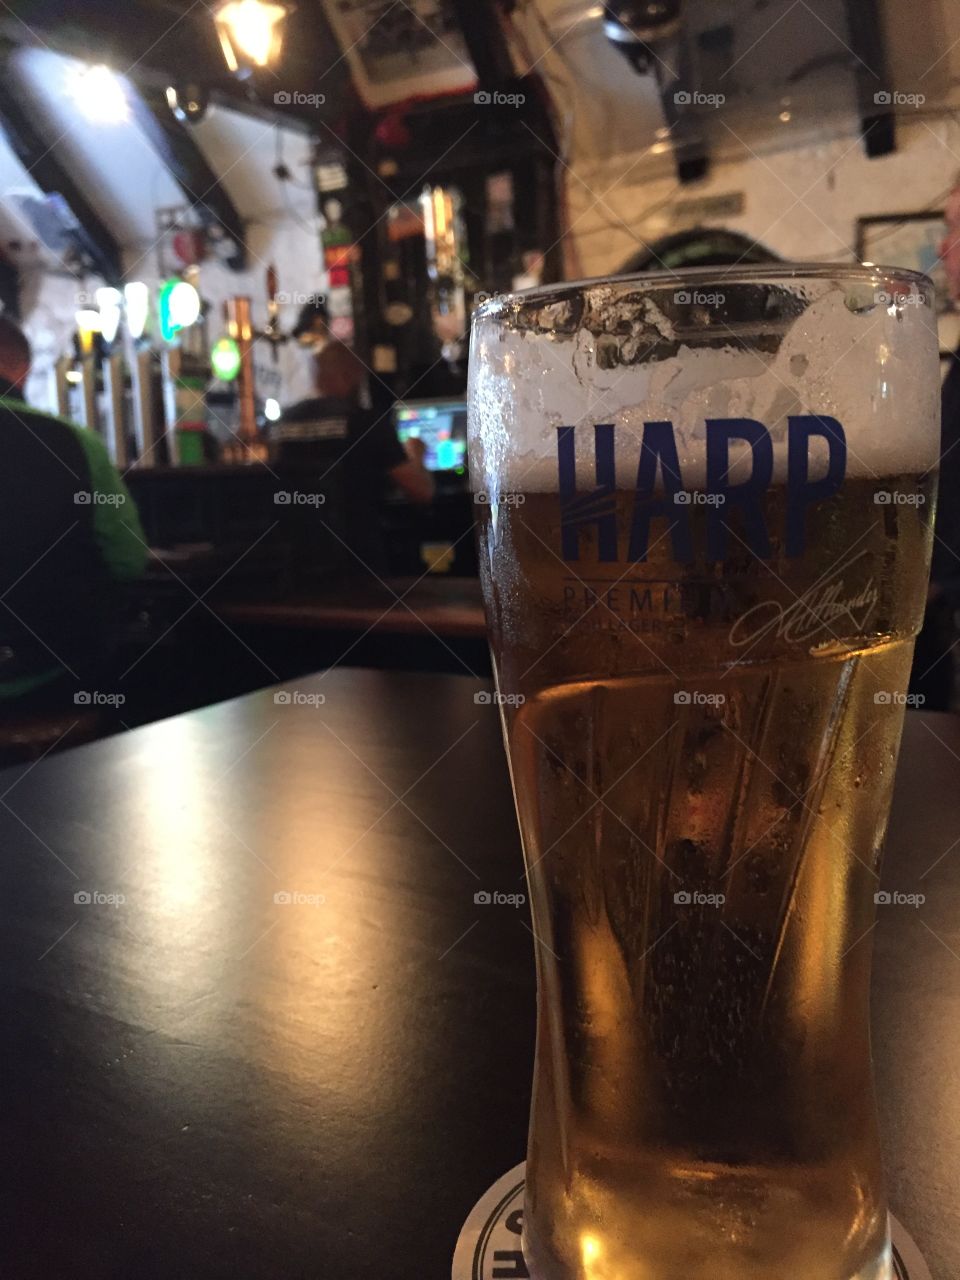 Harp beer on pub table in Belfast Ireland